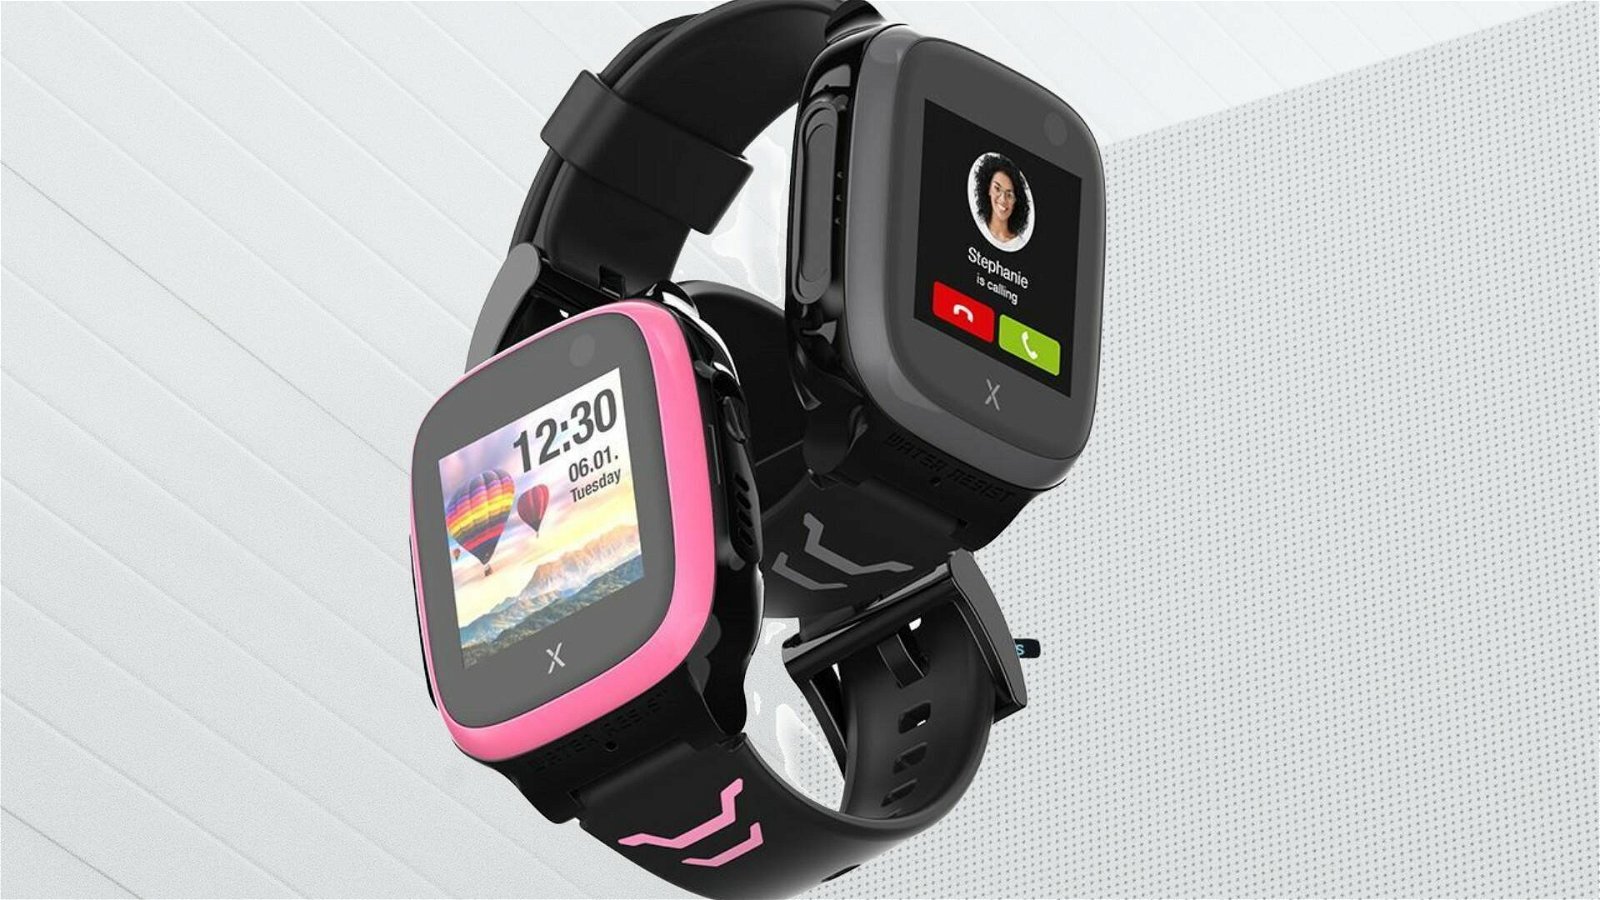 Immagine di Smartwatch per bambini Xplora X5 Play, recensione